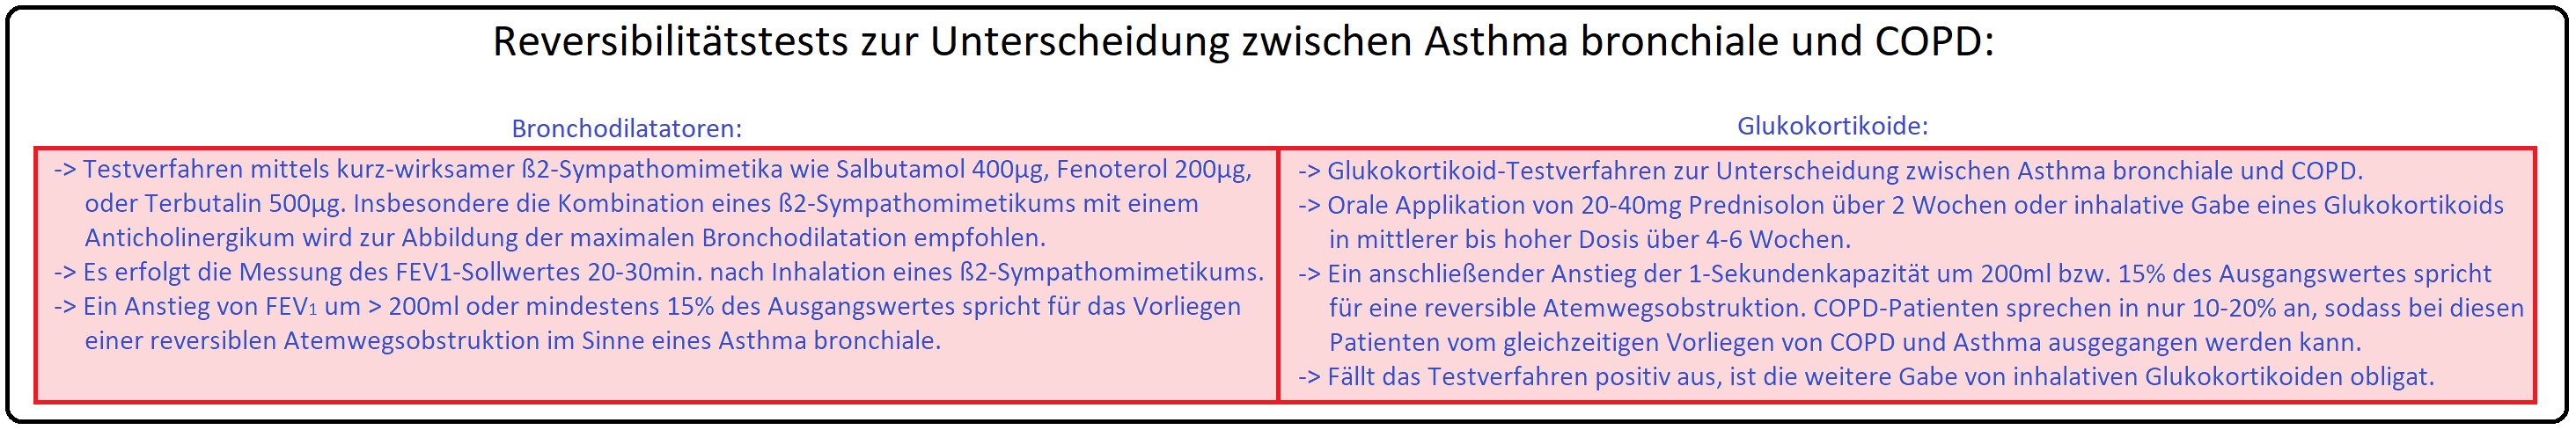 1011 Reversibilitätstest zur Unterscheidung zwischen Asthma bronchiale und COPD